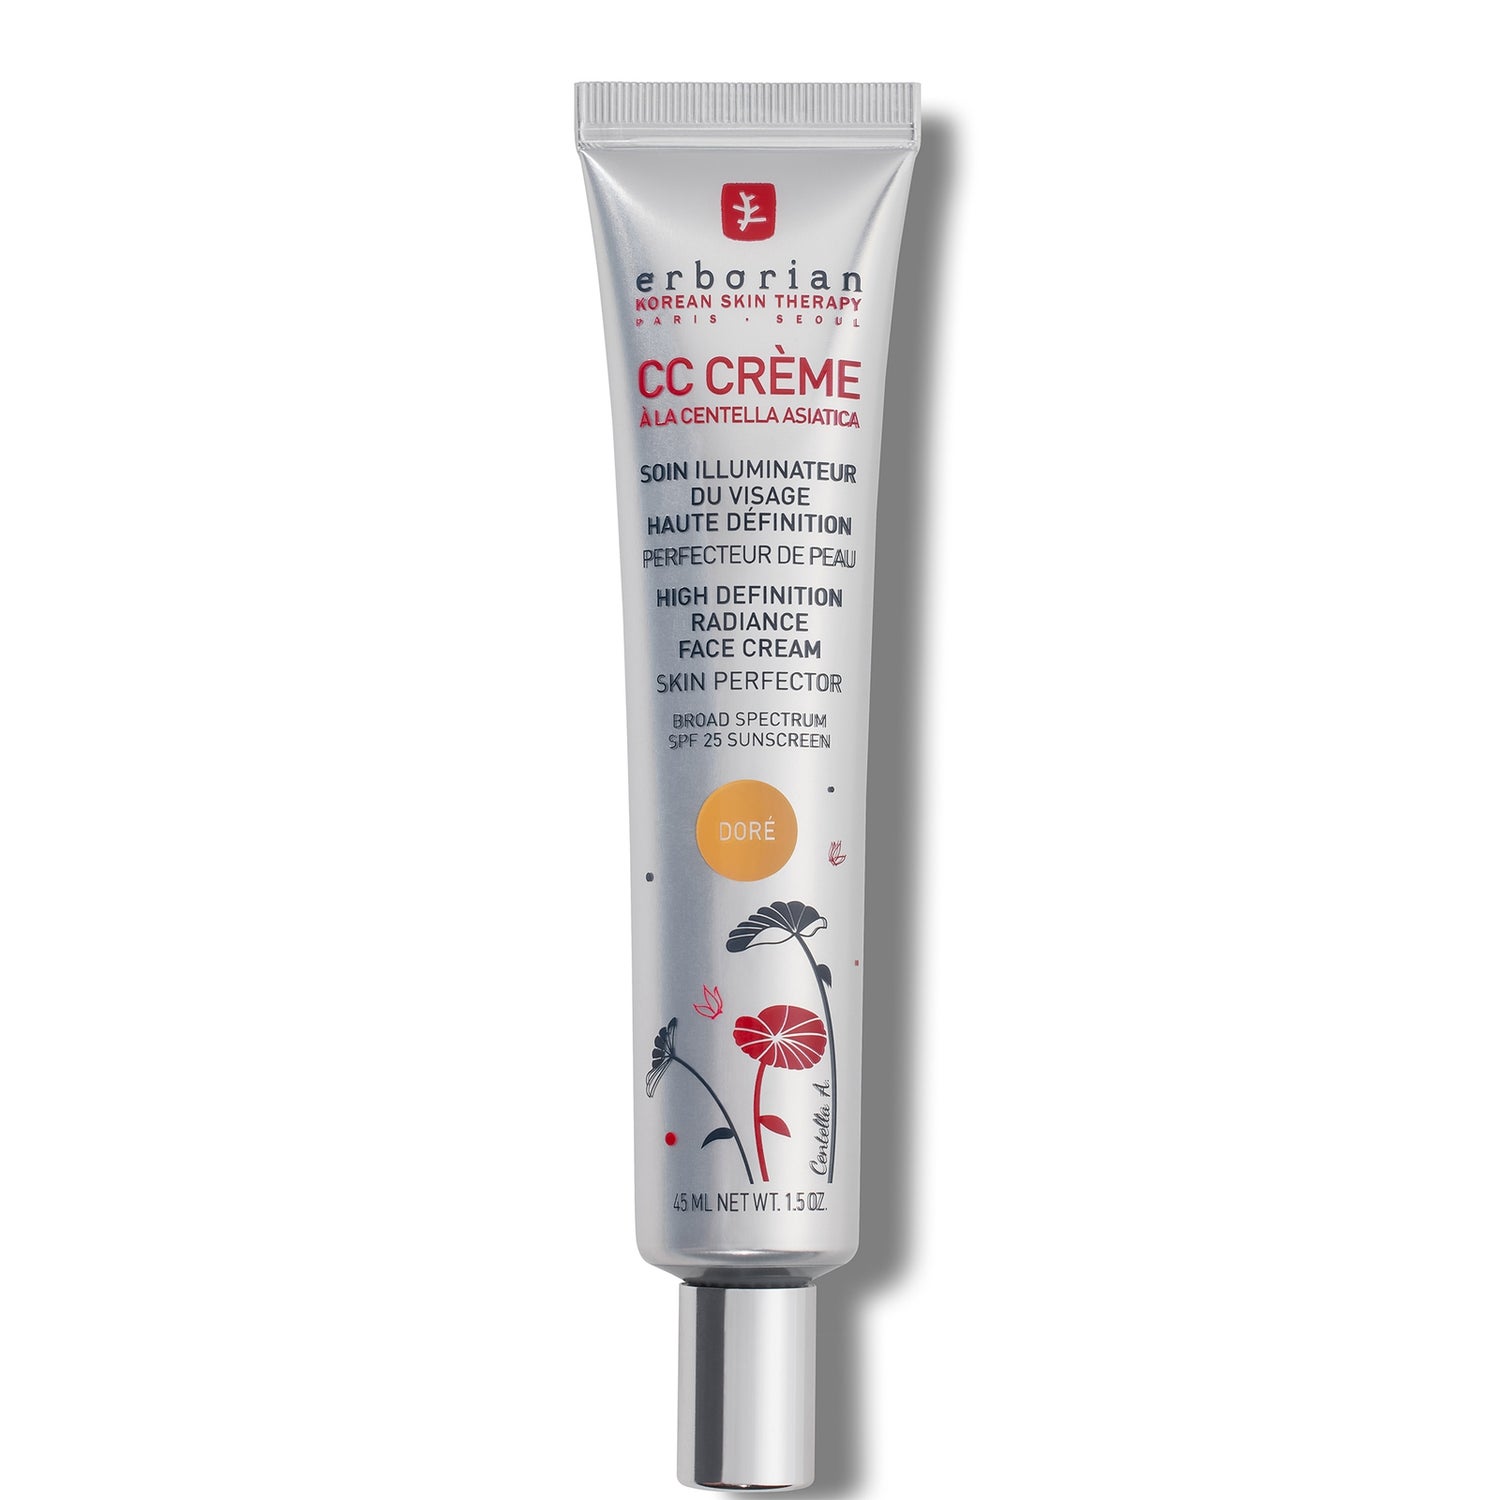 CC Cream 45ml - Fondotinta o base trucco idratante coprenza media SPF25 per tutti i tipi di pelle (varie tonalità)